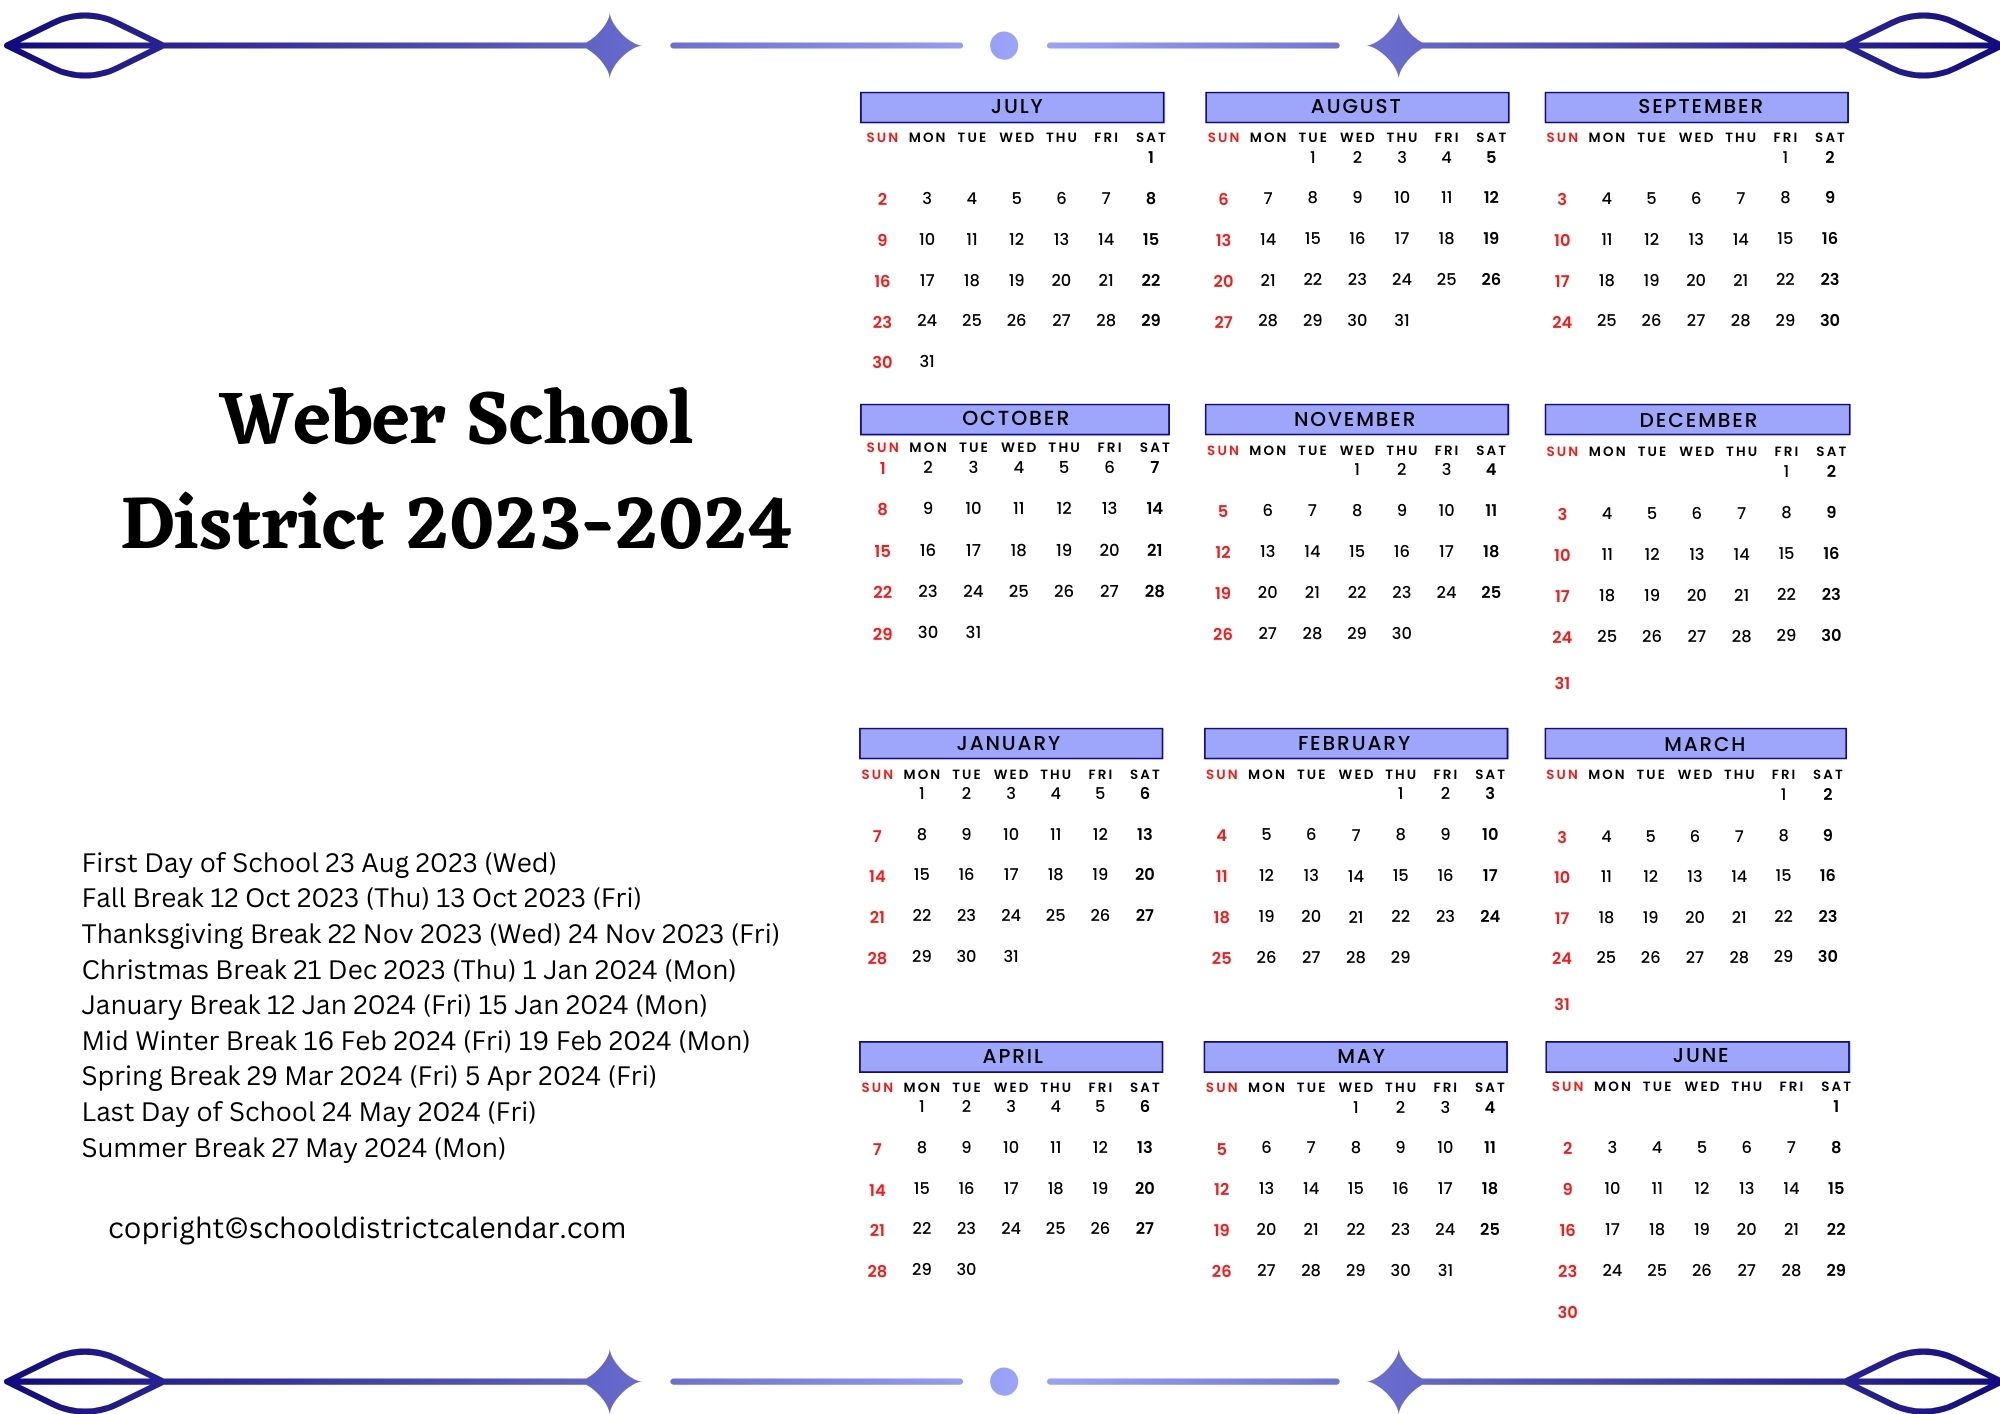 weber-school-district-calendar-holidays-2023-2024